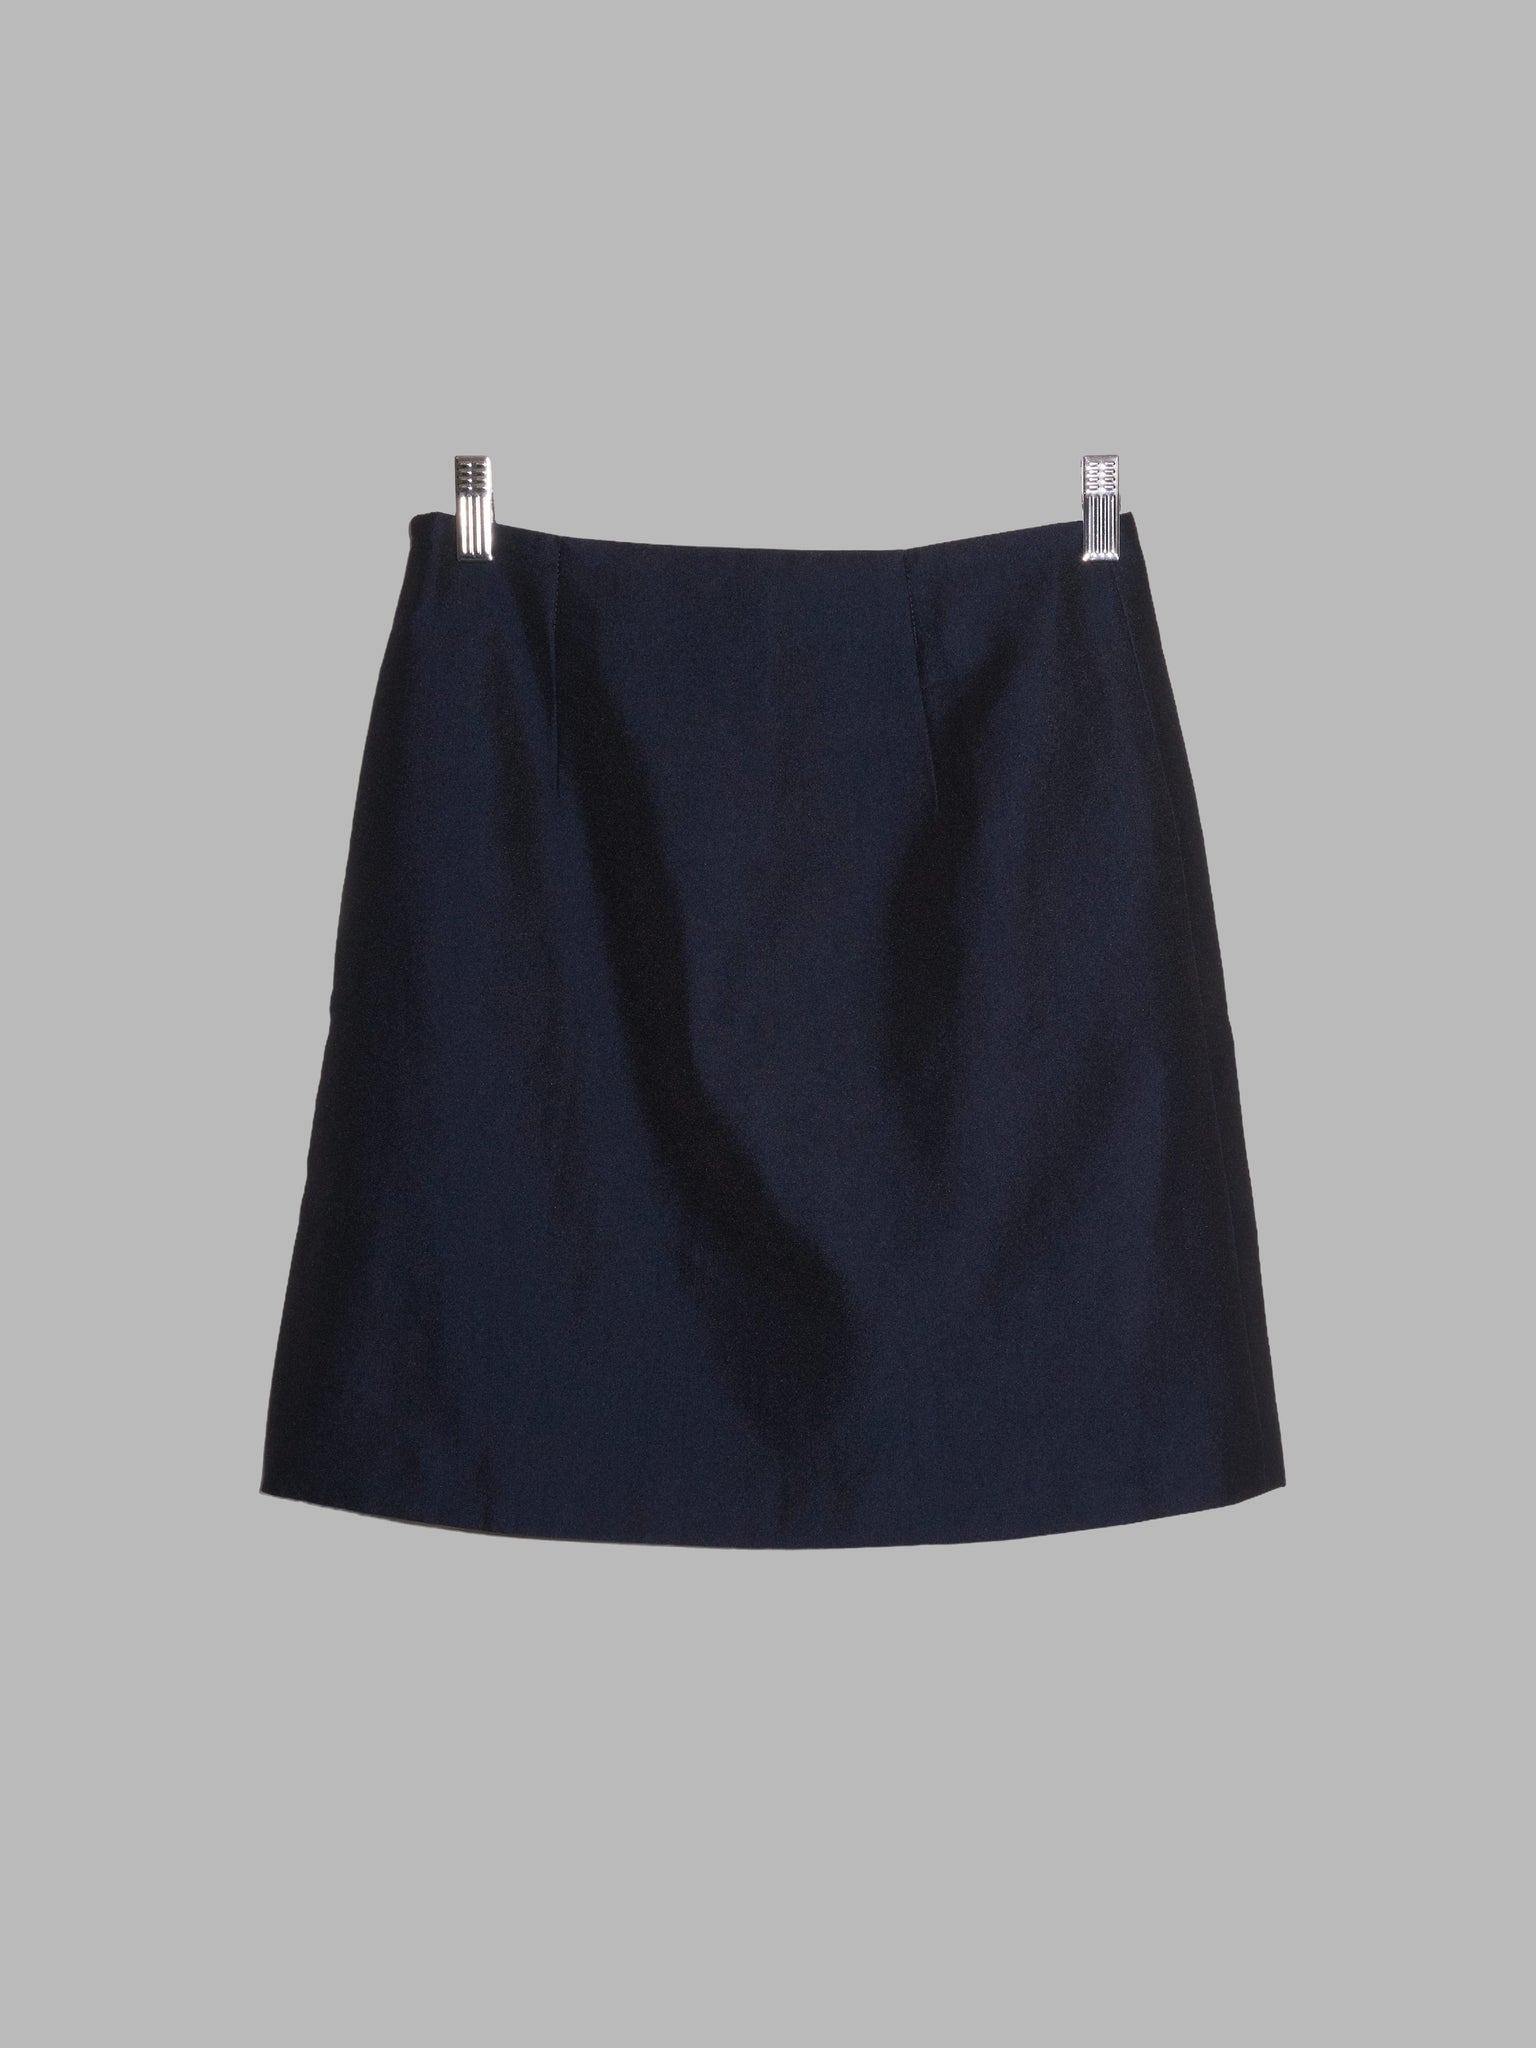 Dirk Bikkembergs 1990s - 2000s dark blue sheeny nylon miniskirt - size 40